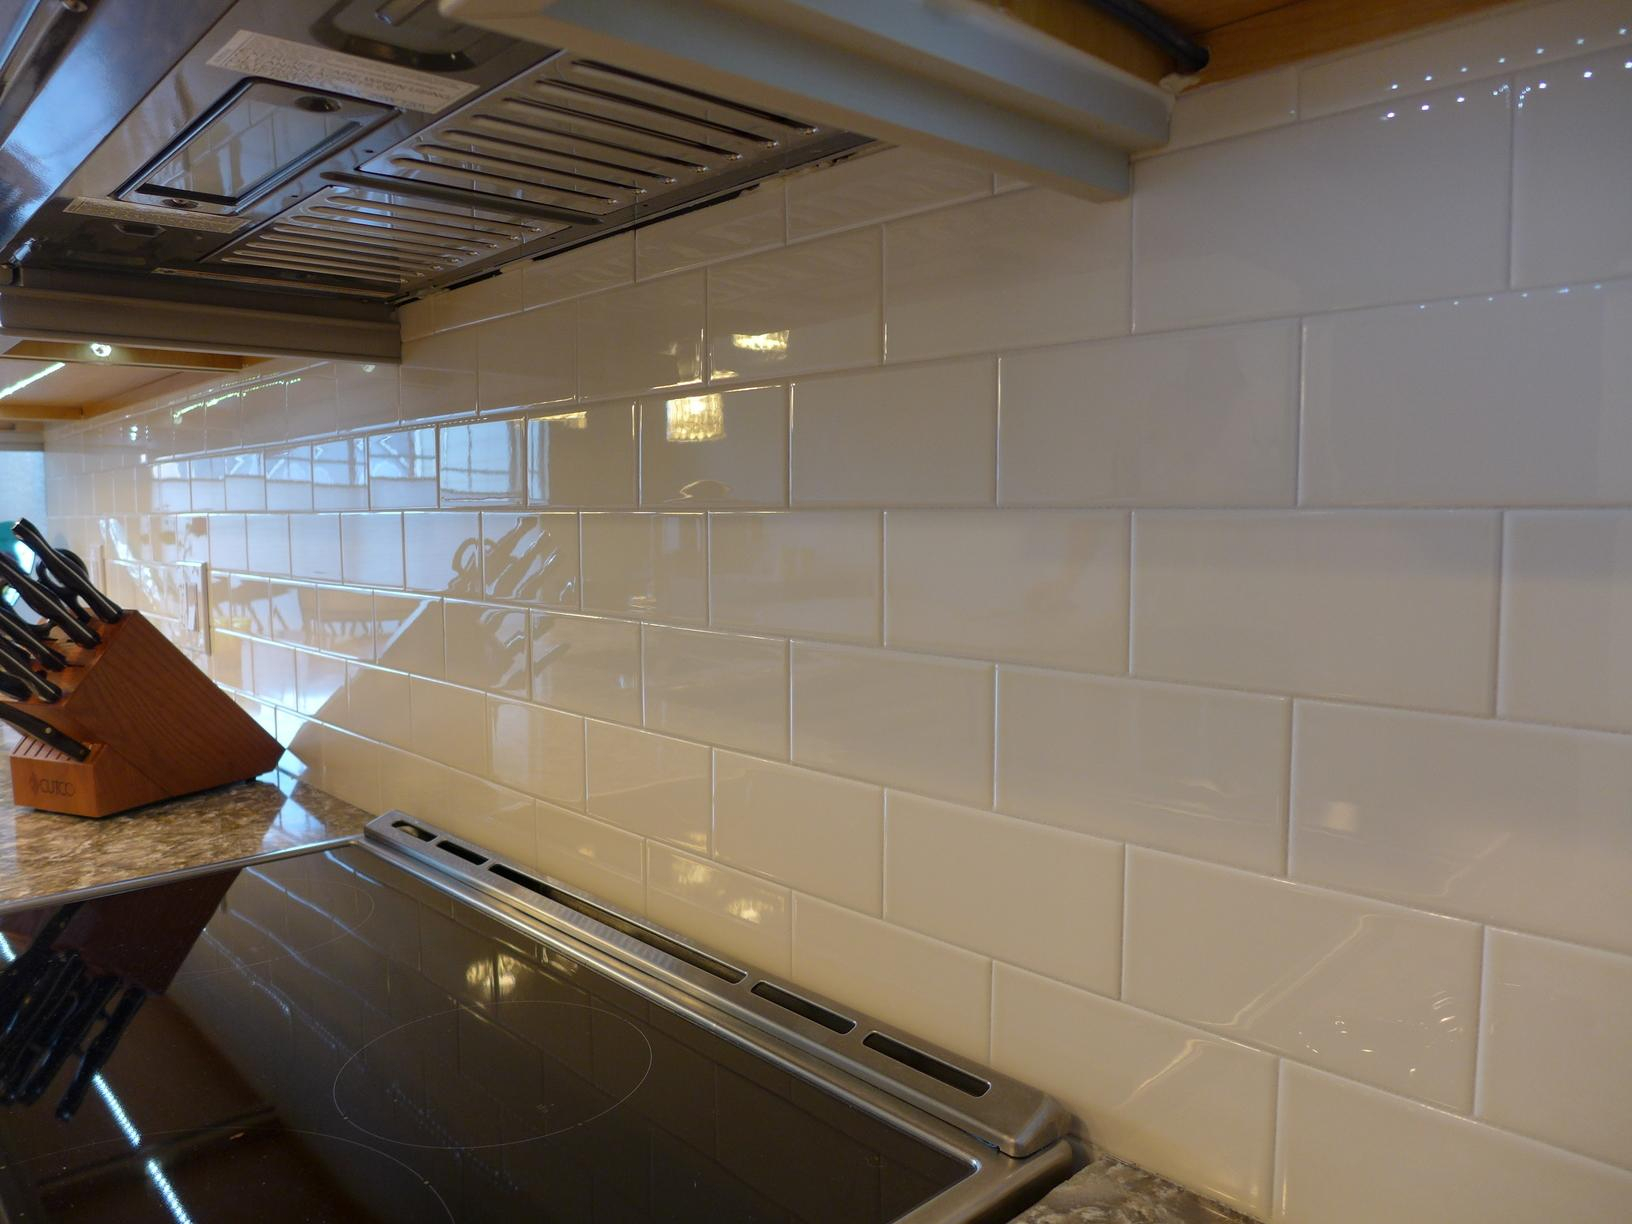 Remodeling - Kitchen Remodeling In Chandler, Az - Tile concernant Arizona Tile Backsplash Ideas